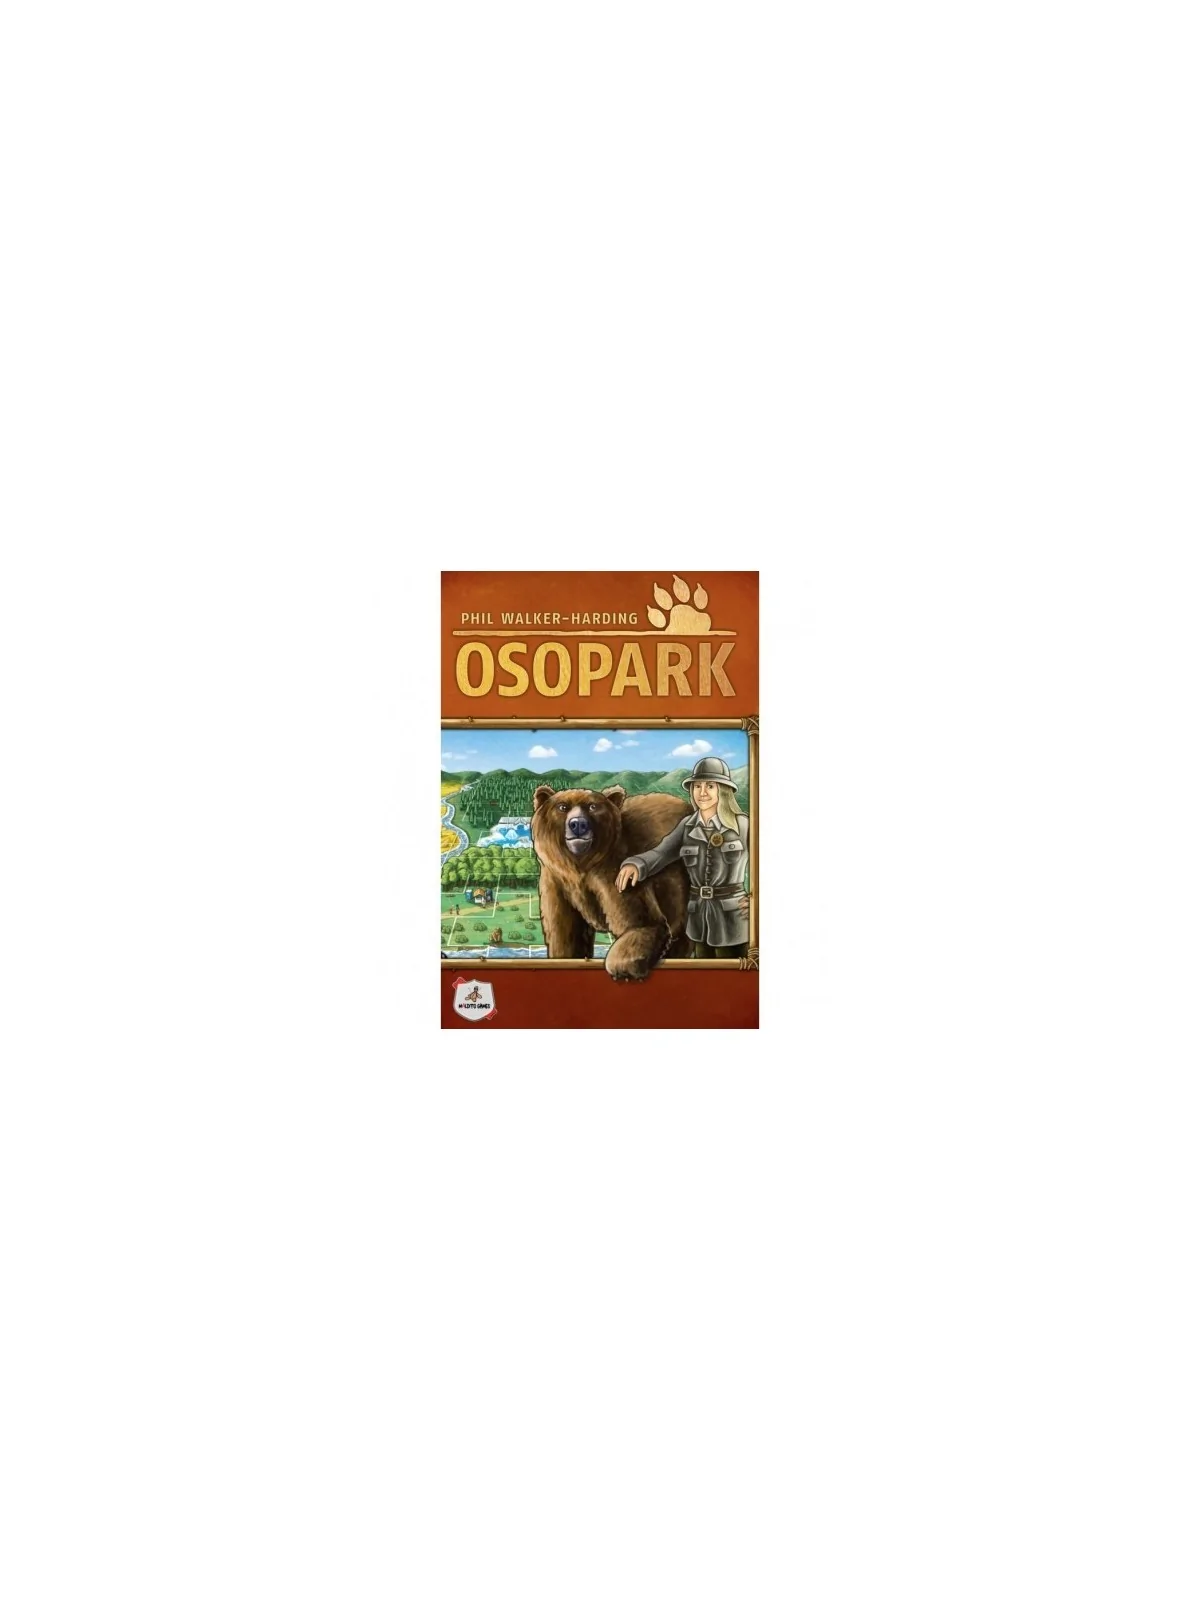 Comprar Osopark barato al mejor precio 27,00 € de Maldito Games